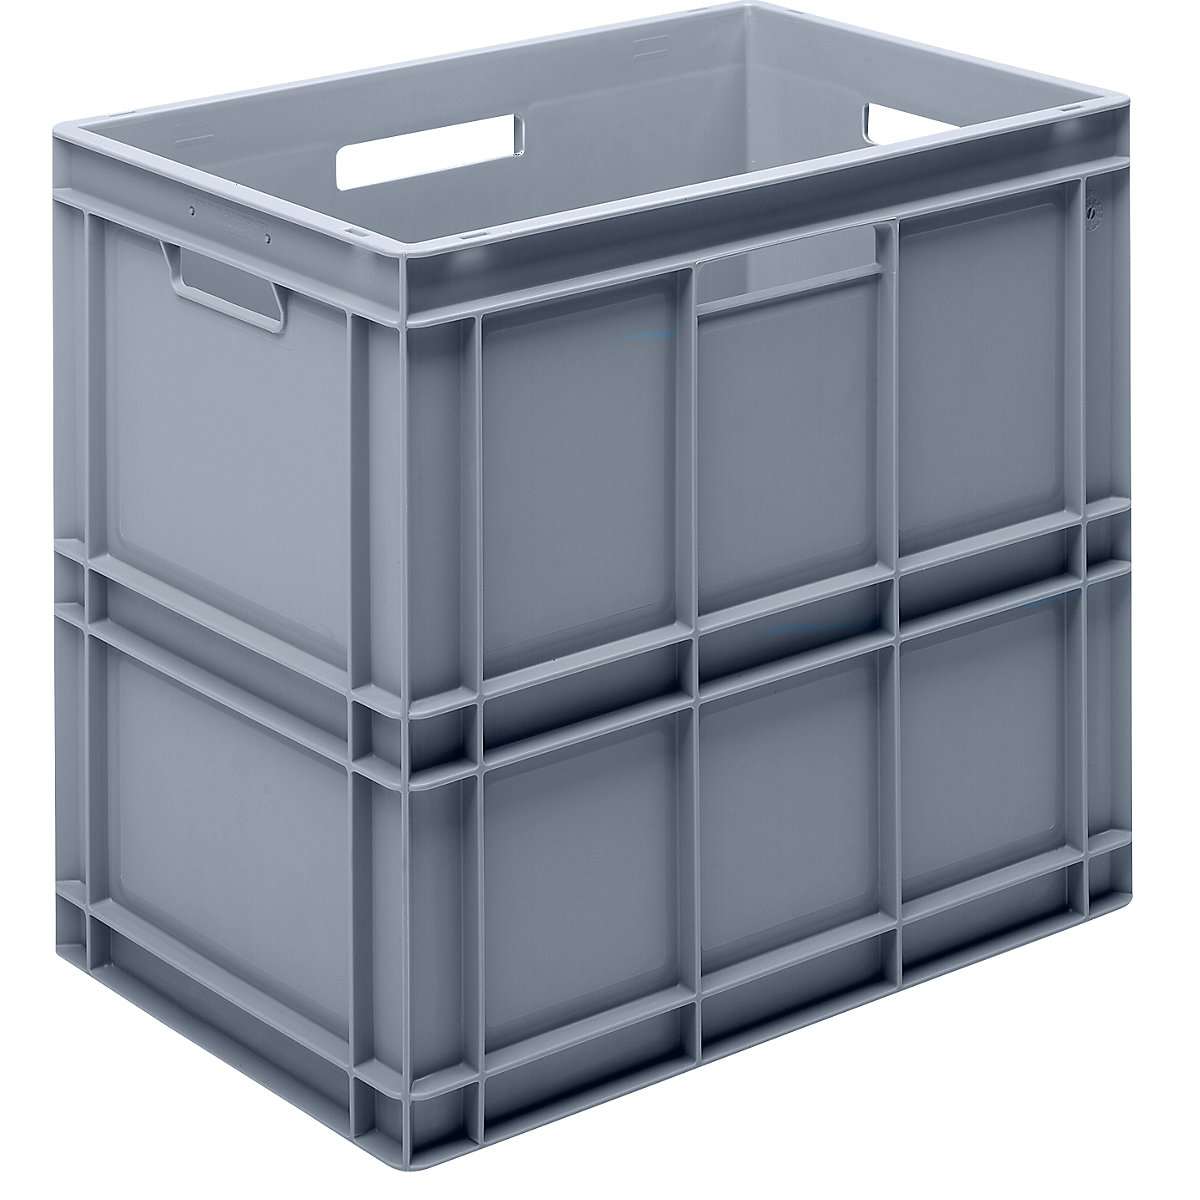 Euro-Stapelbehälter aus Polypropylen (PP), Traglast 20 kg, silbergrau, Inhalt 100 l, Außenhöhe 545 mm, VE 2 Stk